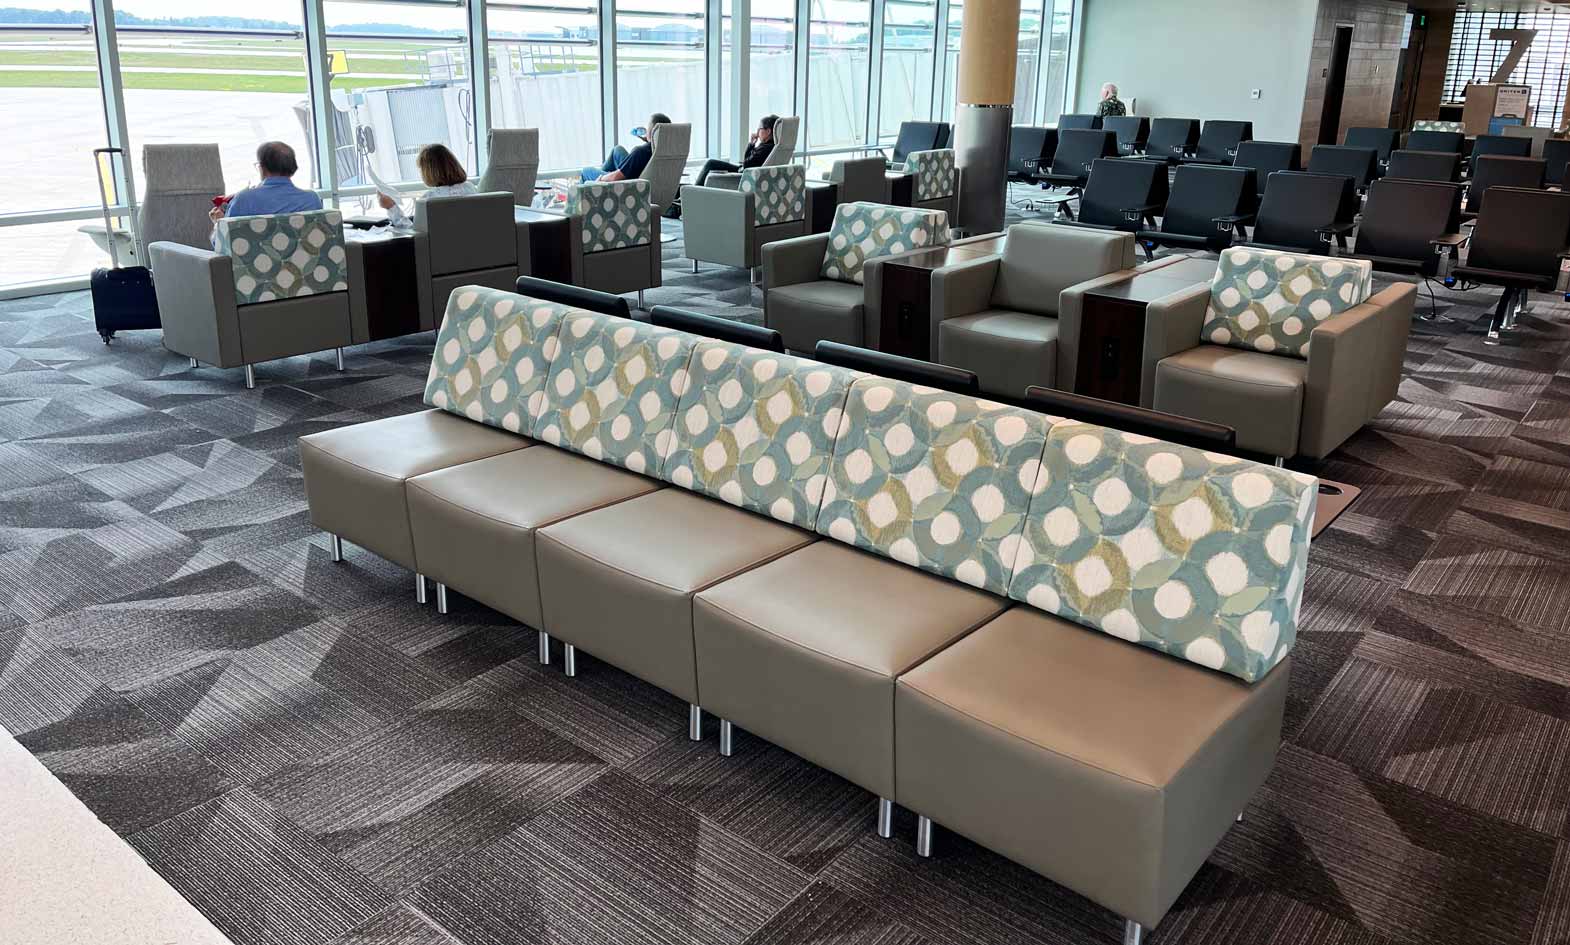 Fort Wayne International Airport Lounge Seating